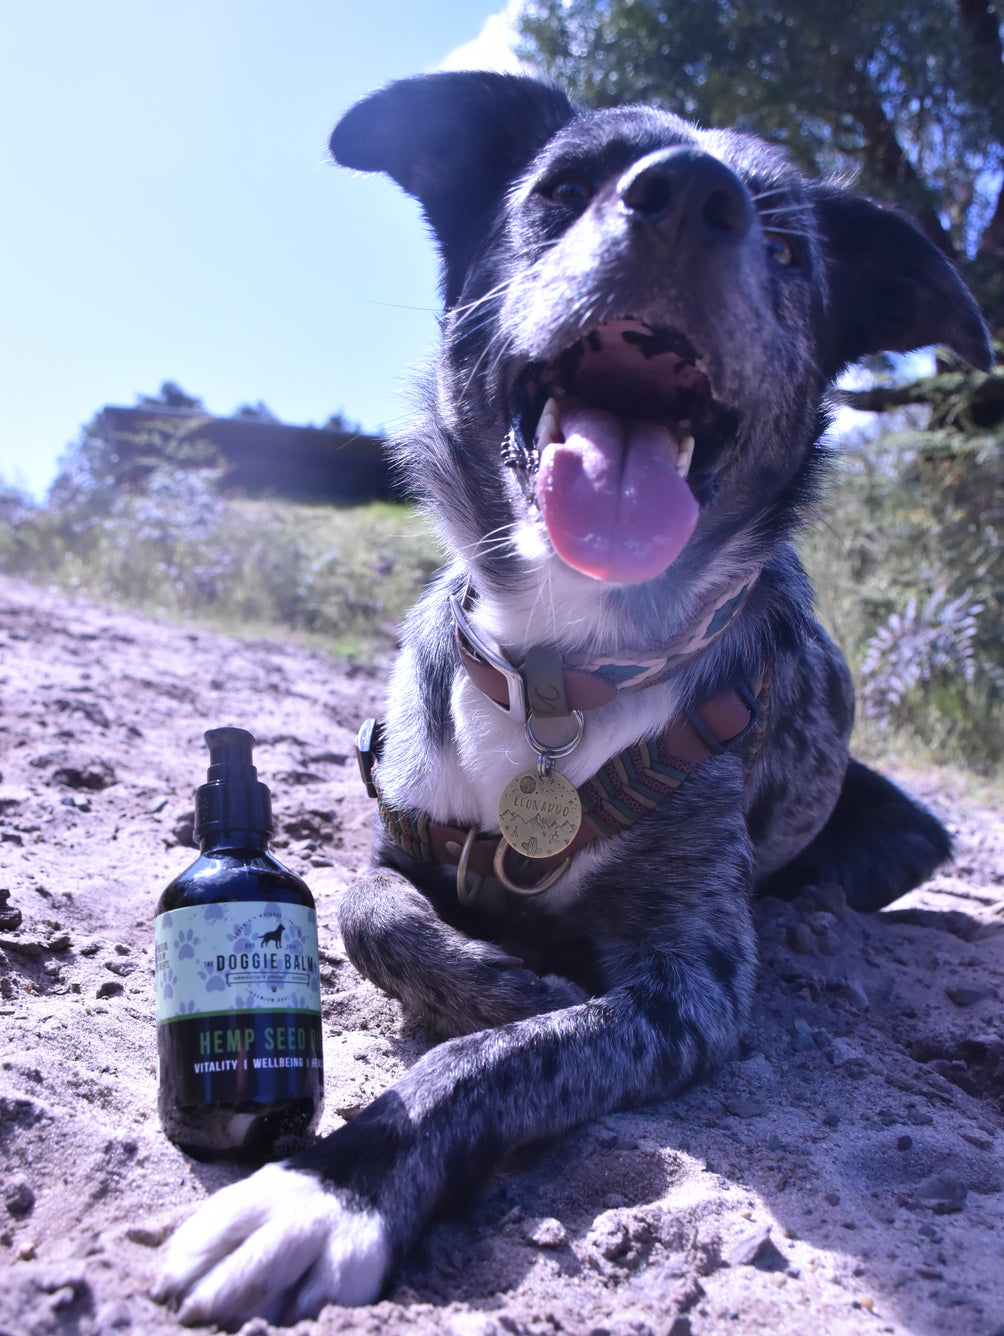 Hemp Spring Bundle Exclusive: Hemp Seed Oil + Free pack of Doggie Wipes